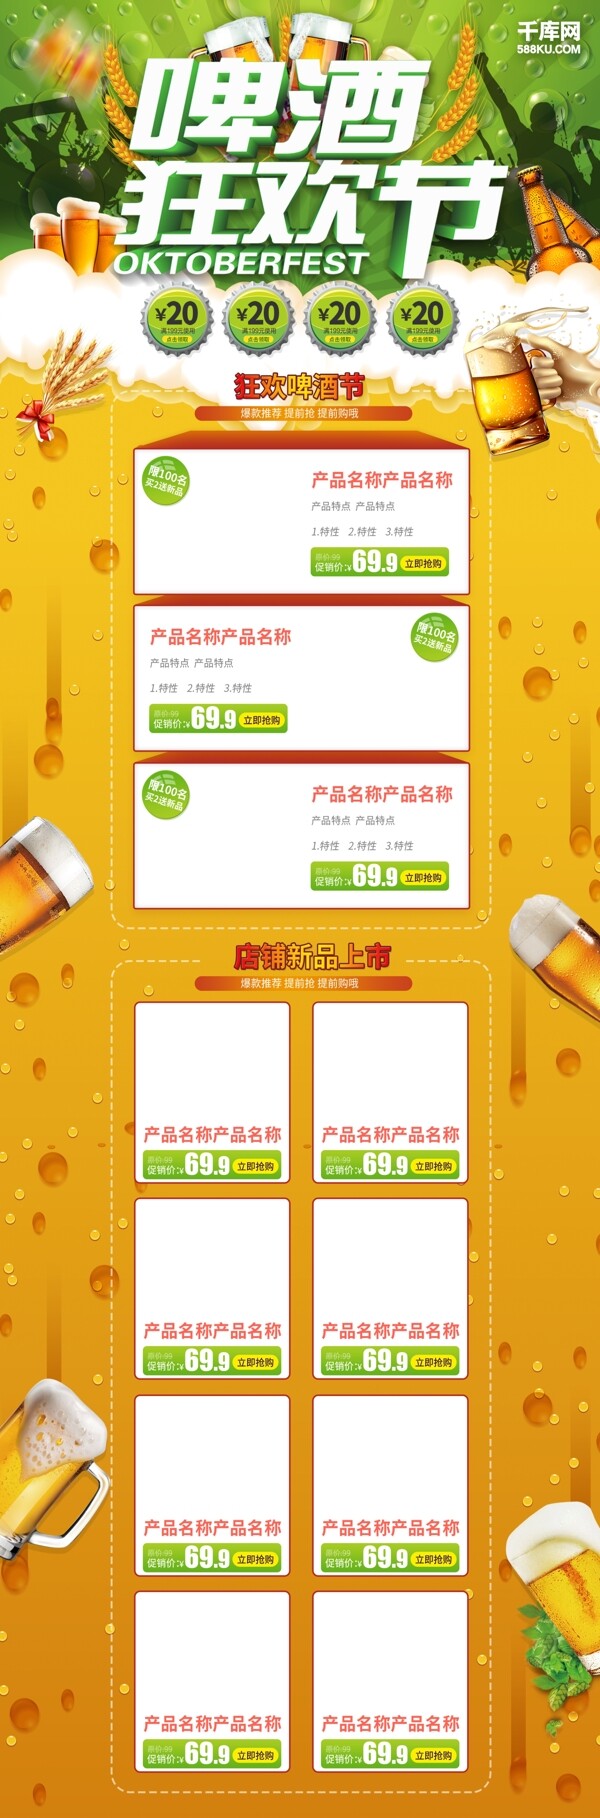 千库原创啤酒节淘宝首页